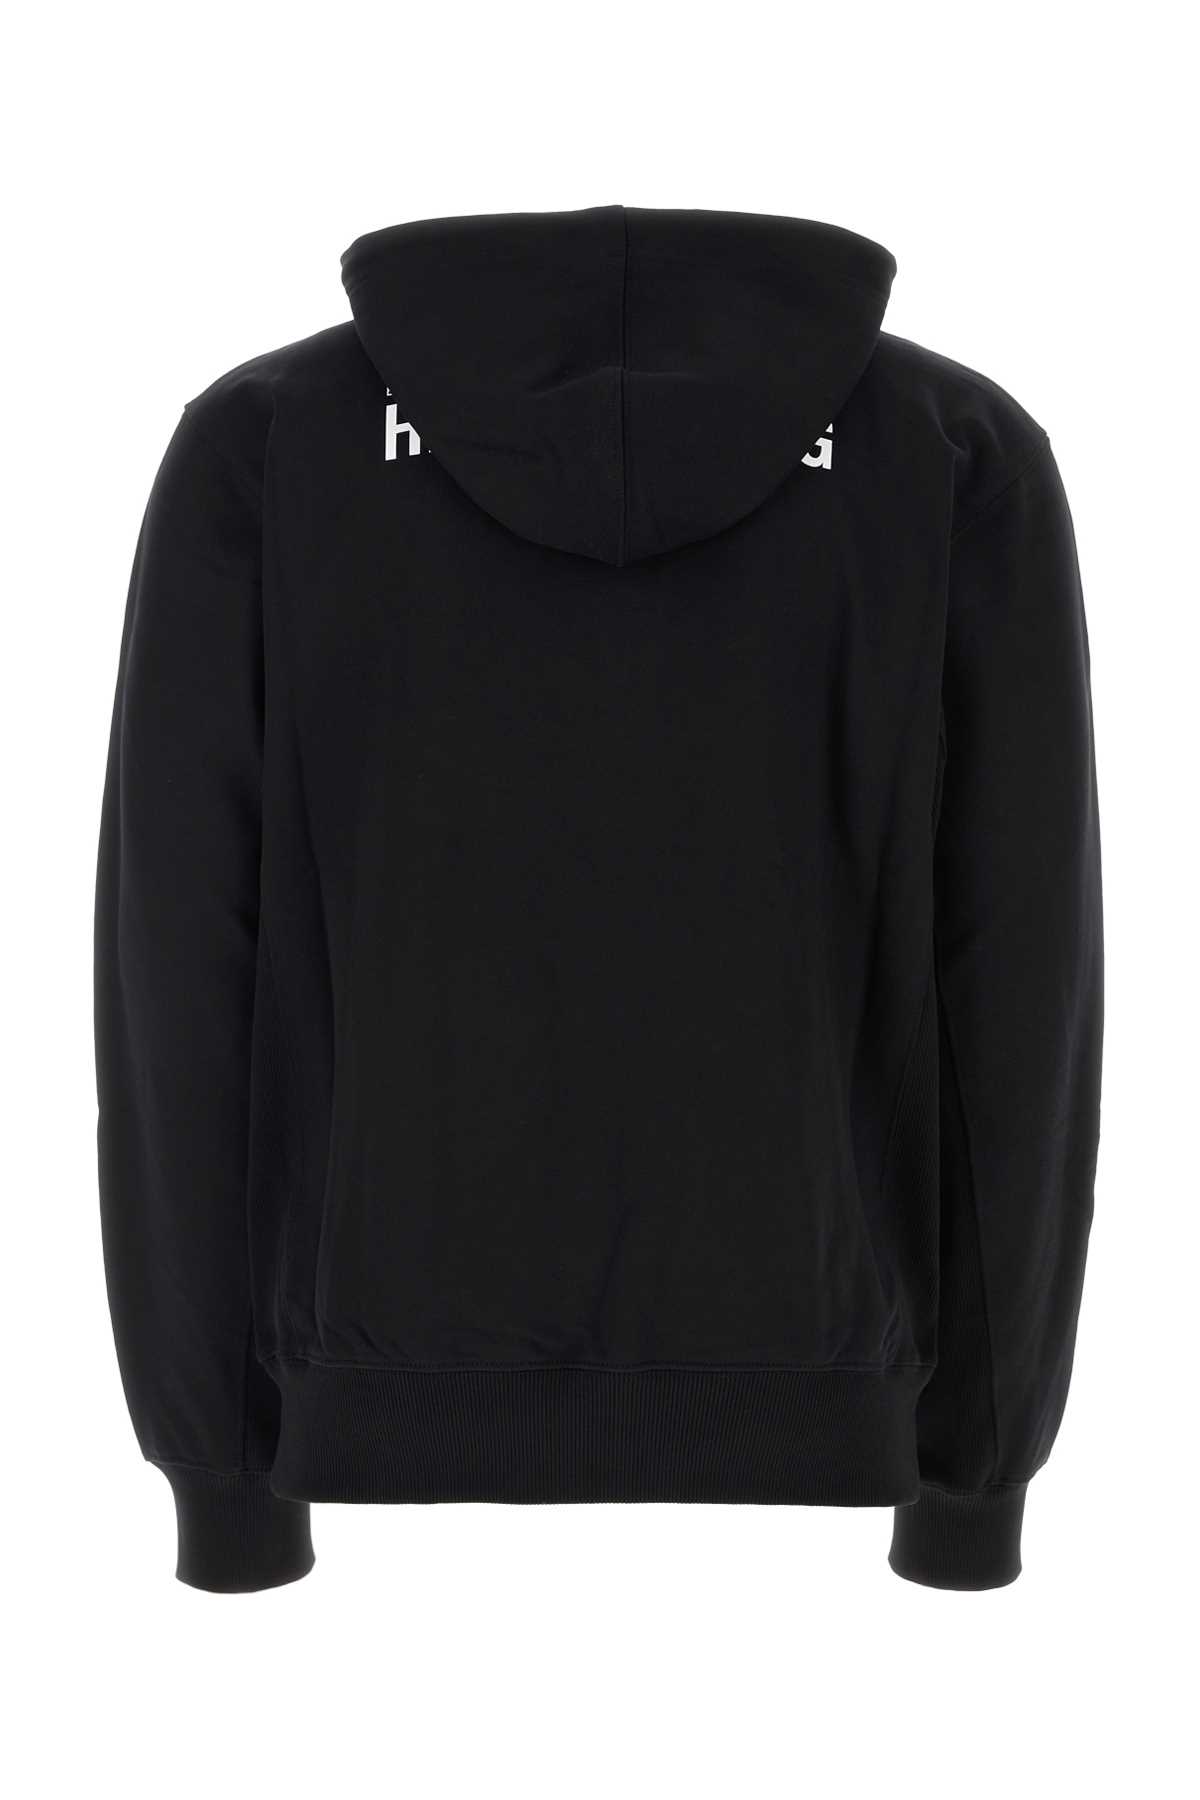 Shop Helmut Lang Black Cotton Sweatshirt